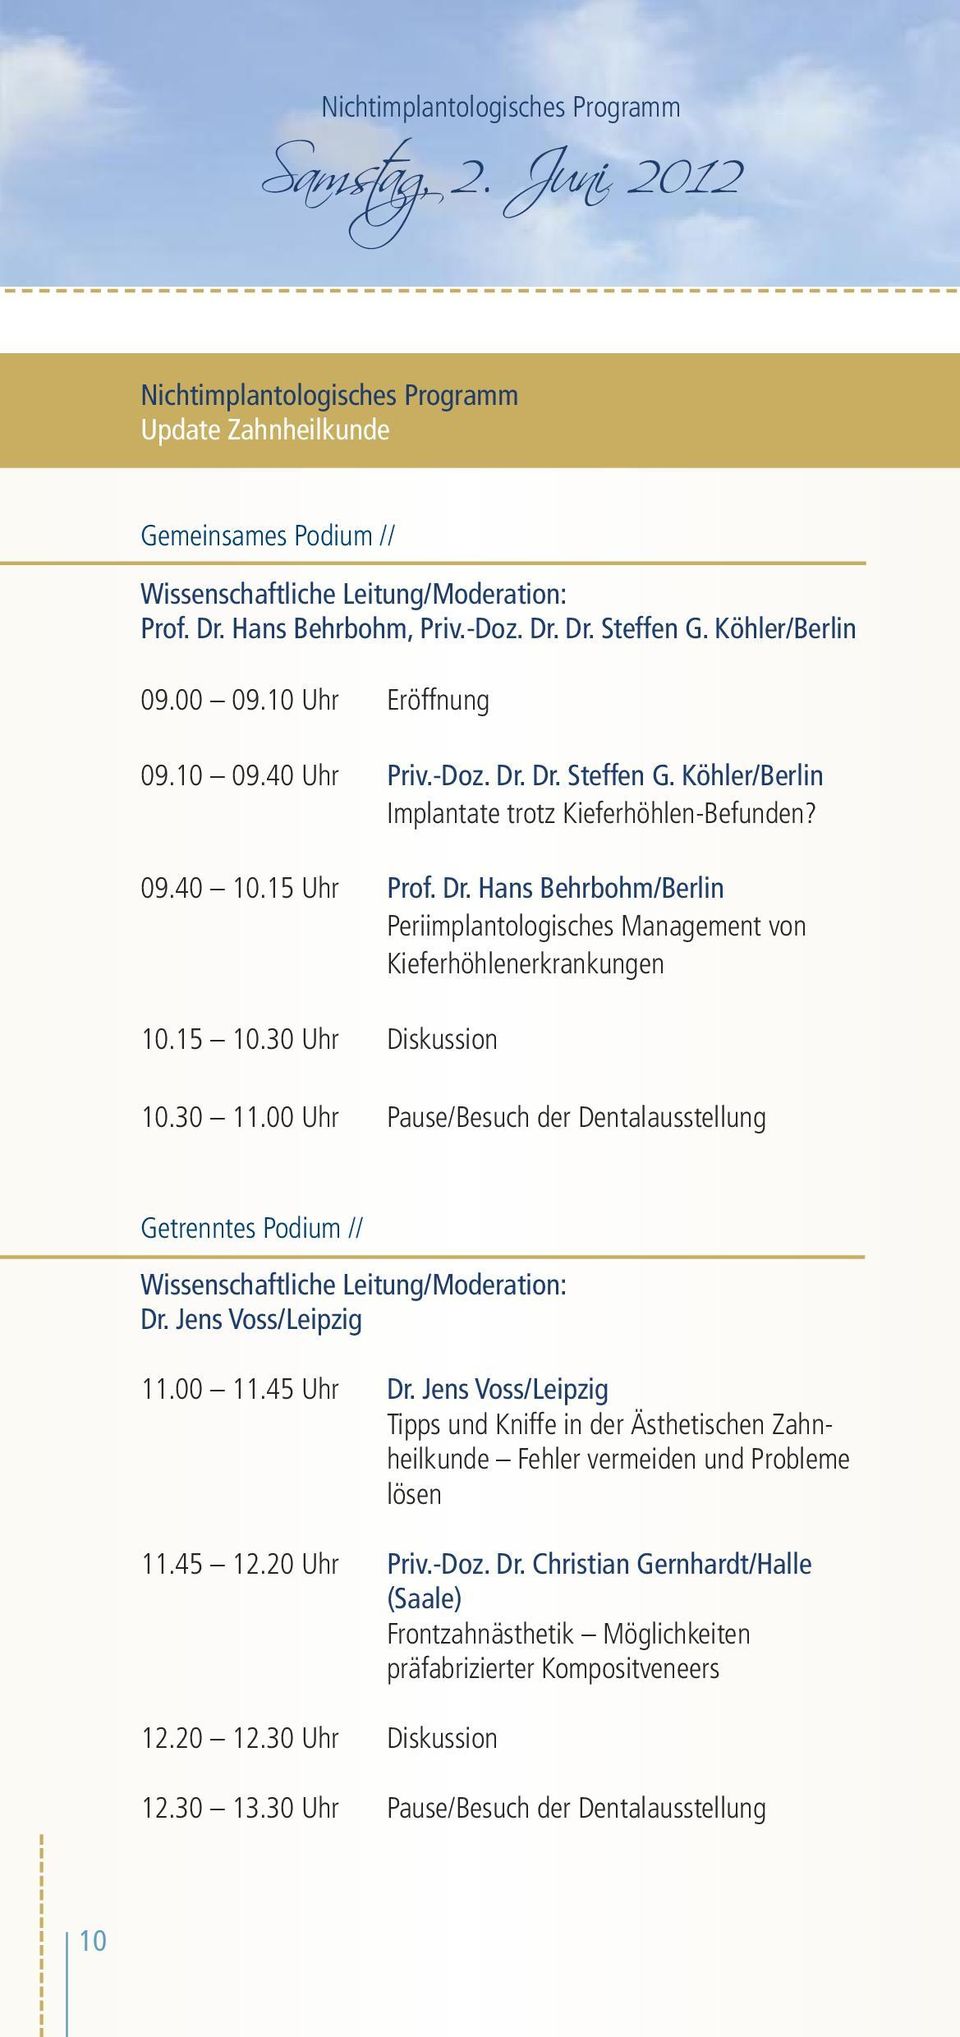 15 10.30 Uhr Diskussion 10.30 11.00 Uhr Pause/Besuch der Dentalausstellung Getrenntes Podium // Wissenschaftliche Leitung/Moderation: Dr. Jens Voss/Leipzig 11.00 11.45 Uhr Dr.